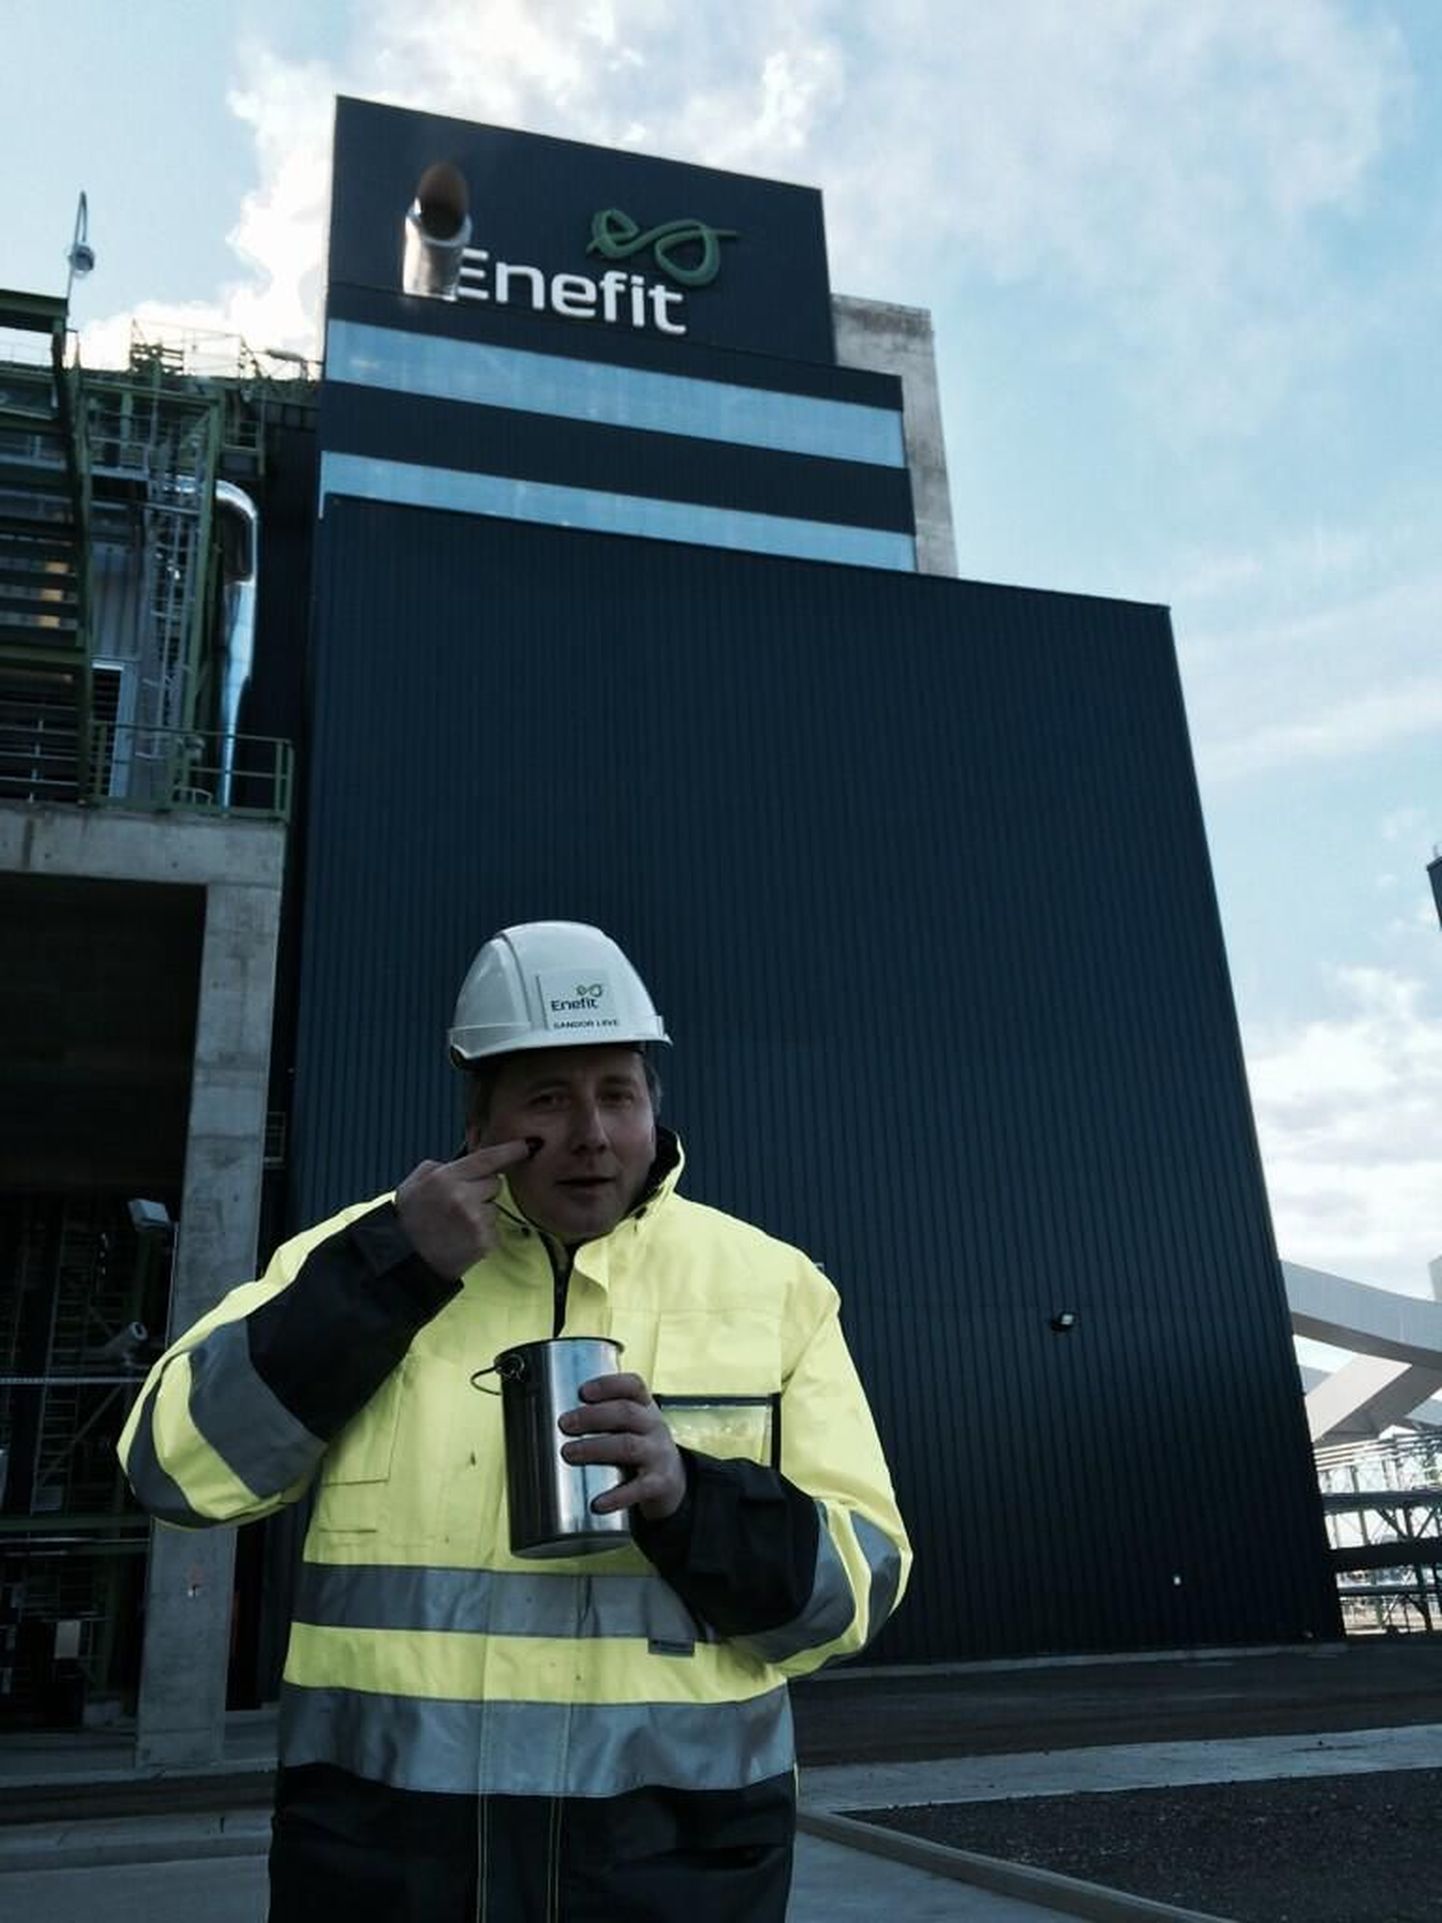 Eesti Energia juhatuse esimees Sandor Liive määrib  oma nägu õliga, tõestamaks Enefiti tehase edukat tööle hakkamist.